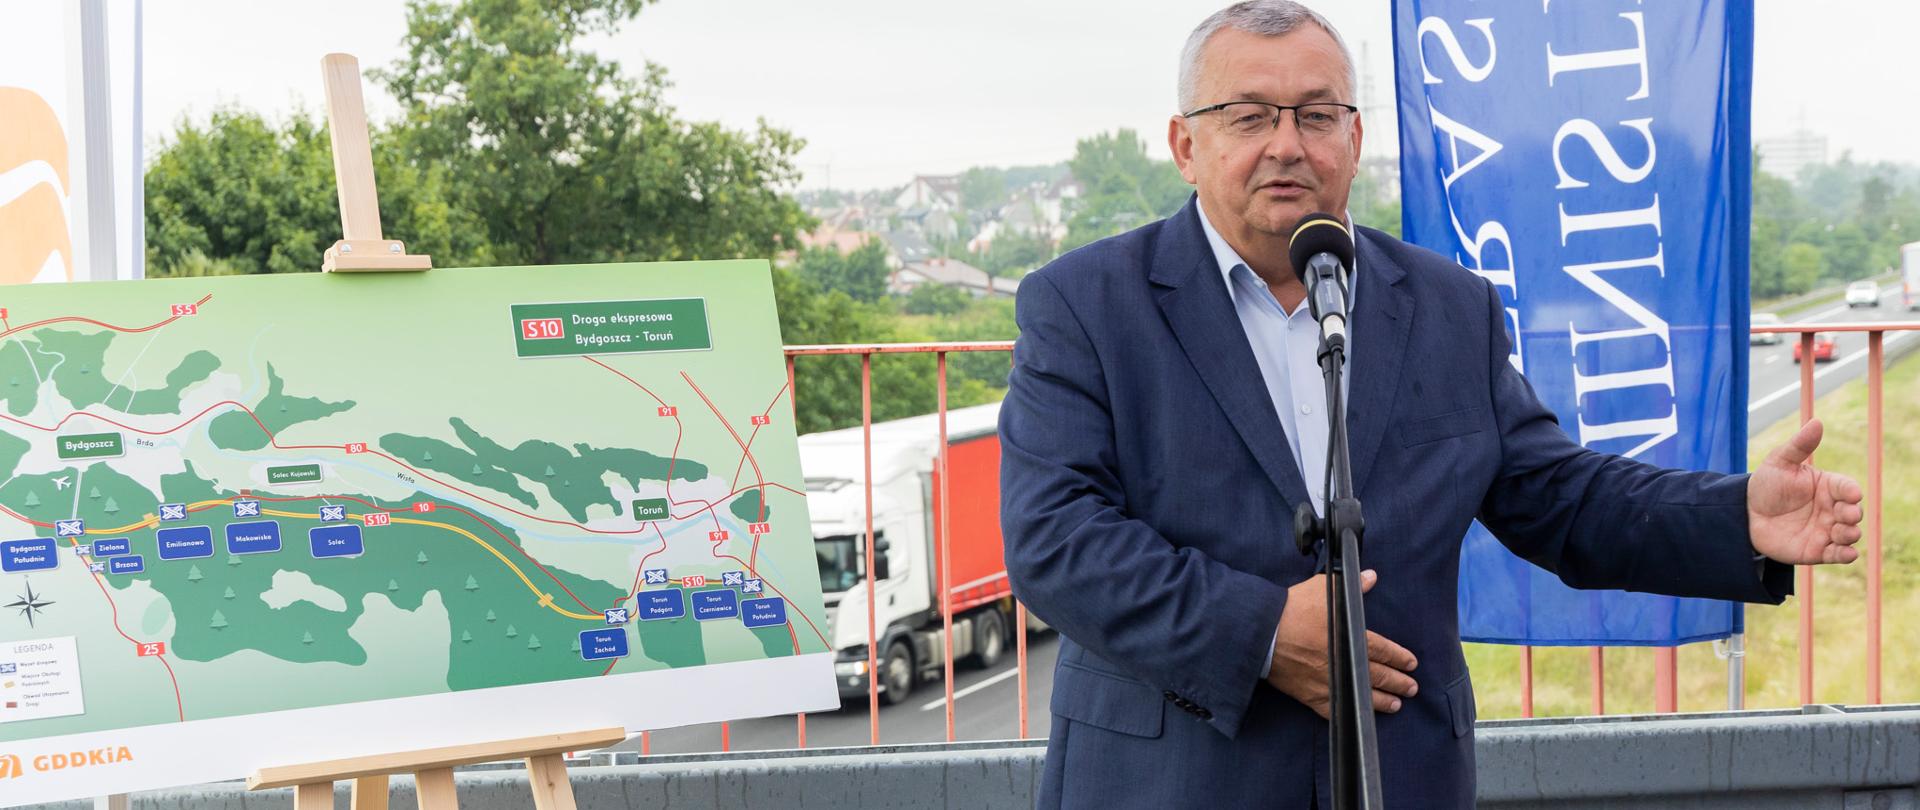 Ogłoszono ostatni przetarg na realizację trasy S10 między Toruniem a Bydgoszczą. Na zdjęciu - Minister Infrastruktury Andrzej Adamczyk. 